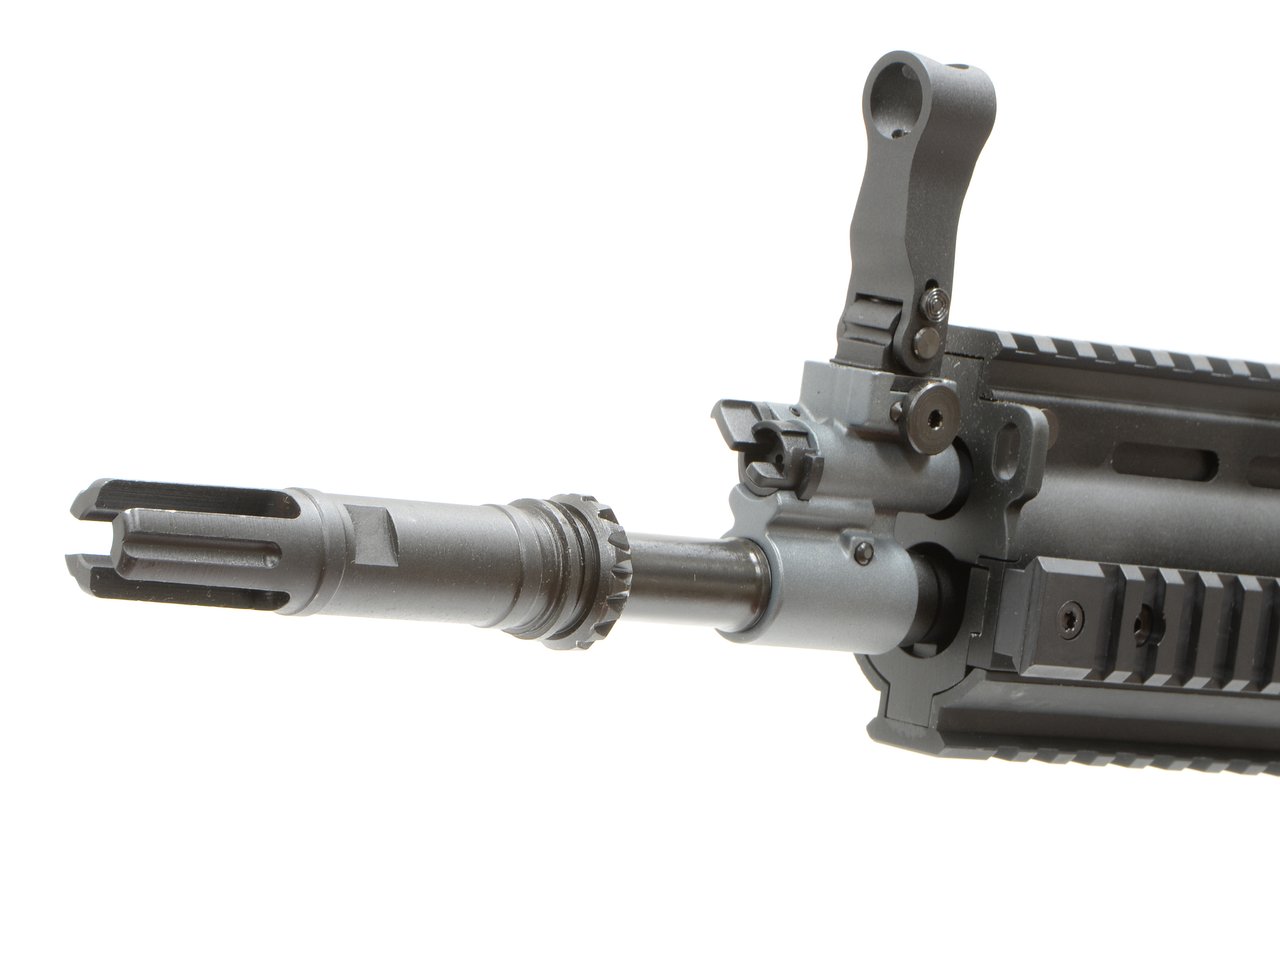 CyberGun FN SCAR-H GBBR (JPversion) BK [ガスガン]